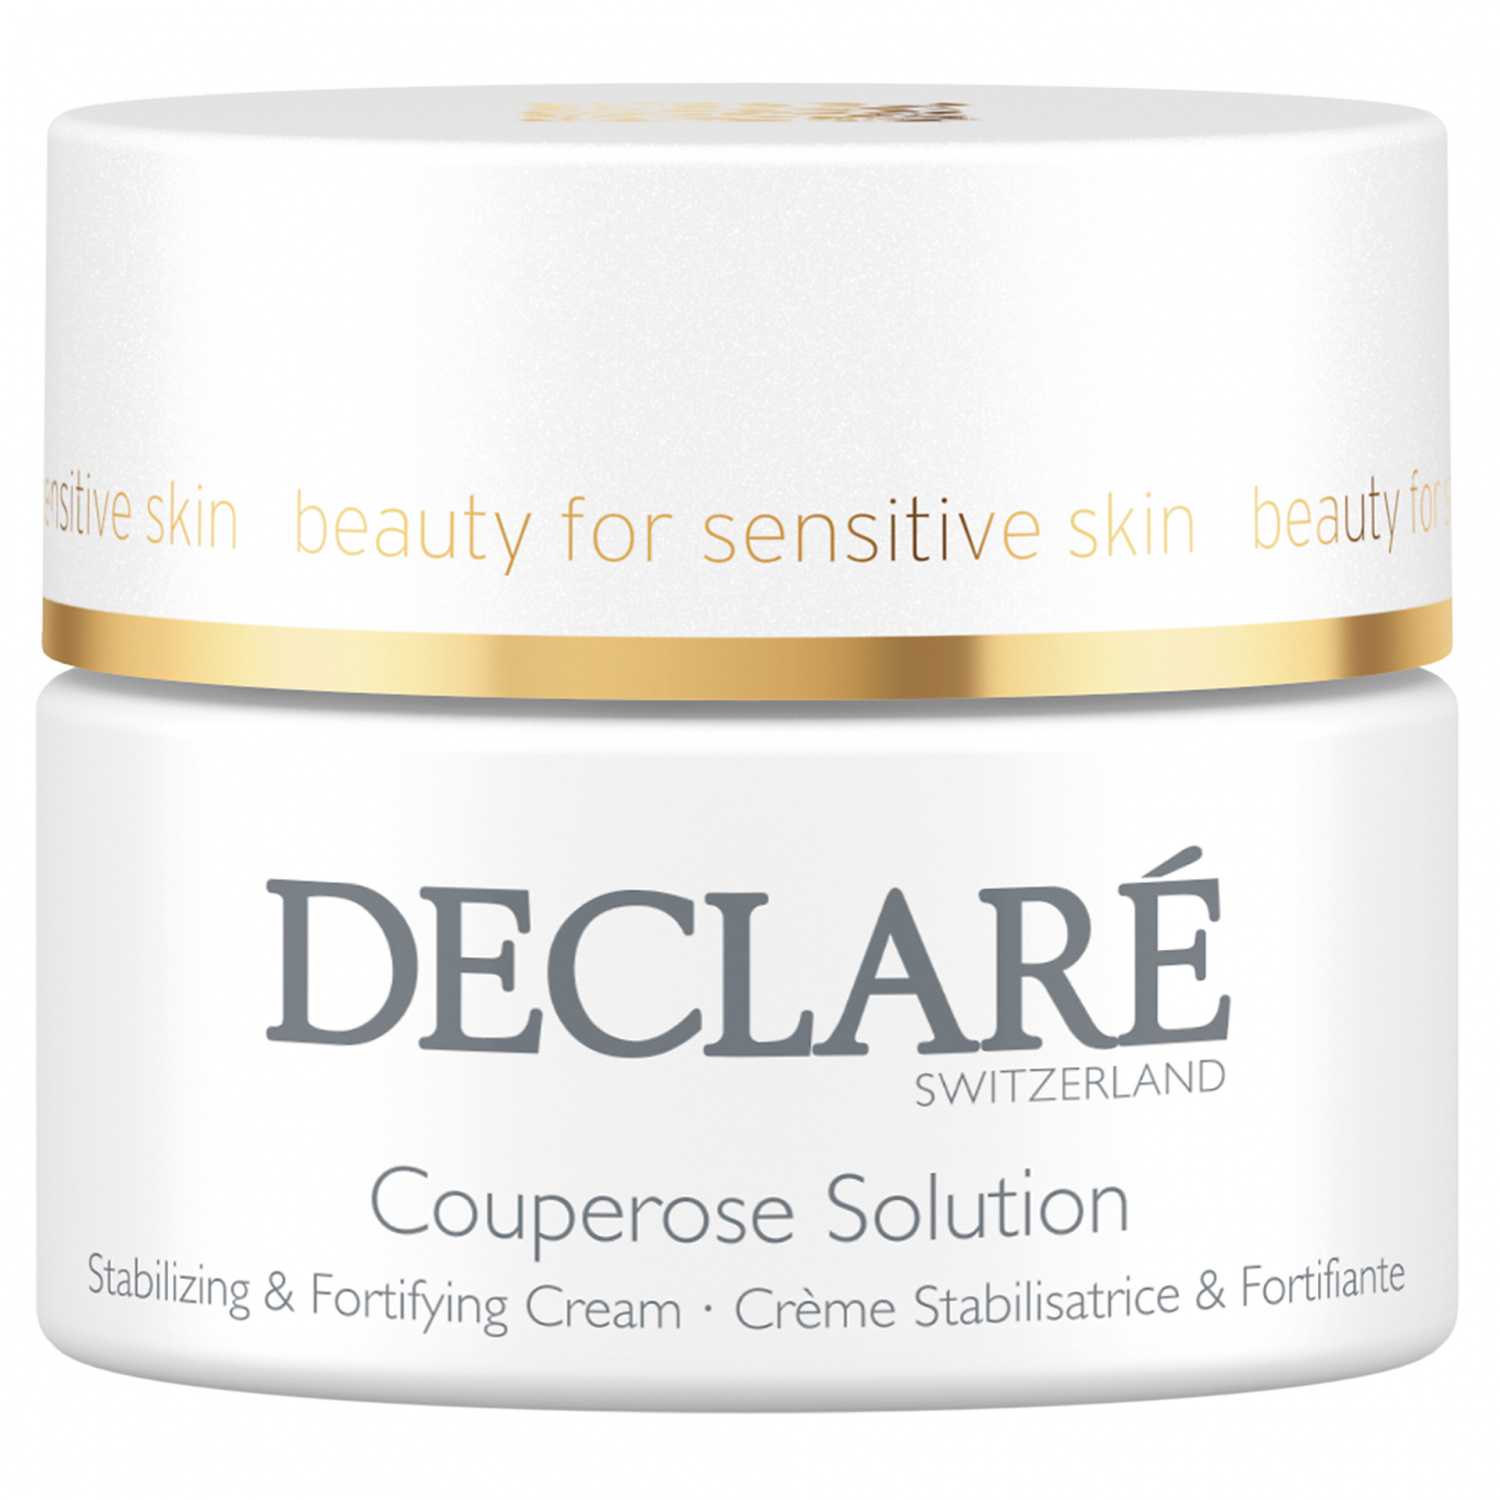 Declare Couperose Solution Cream 50ml - интернет-магазин профессиональной косметики Spadream, изображение 30737